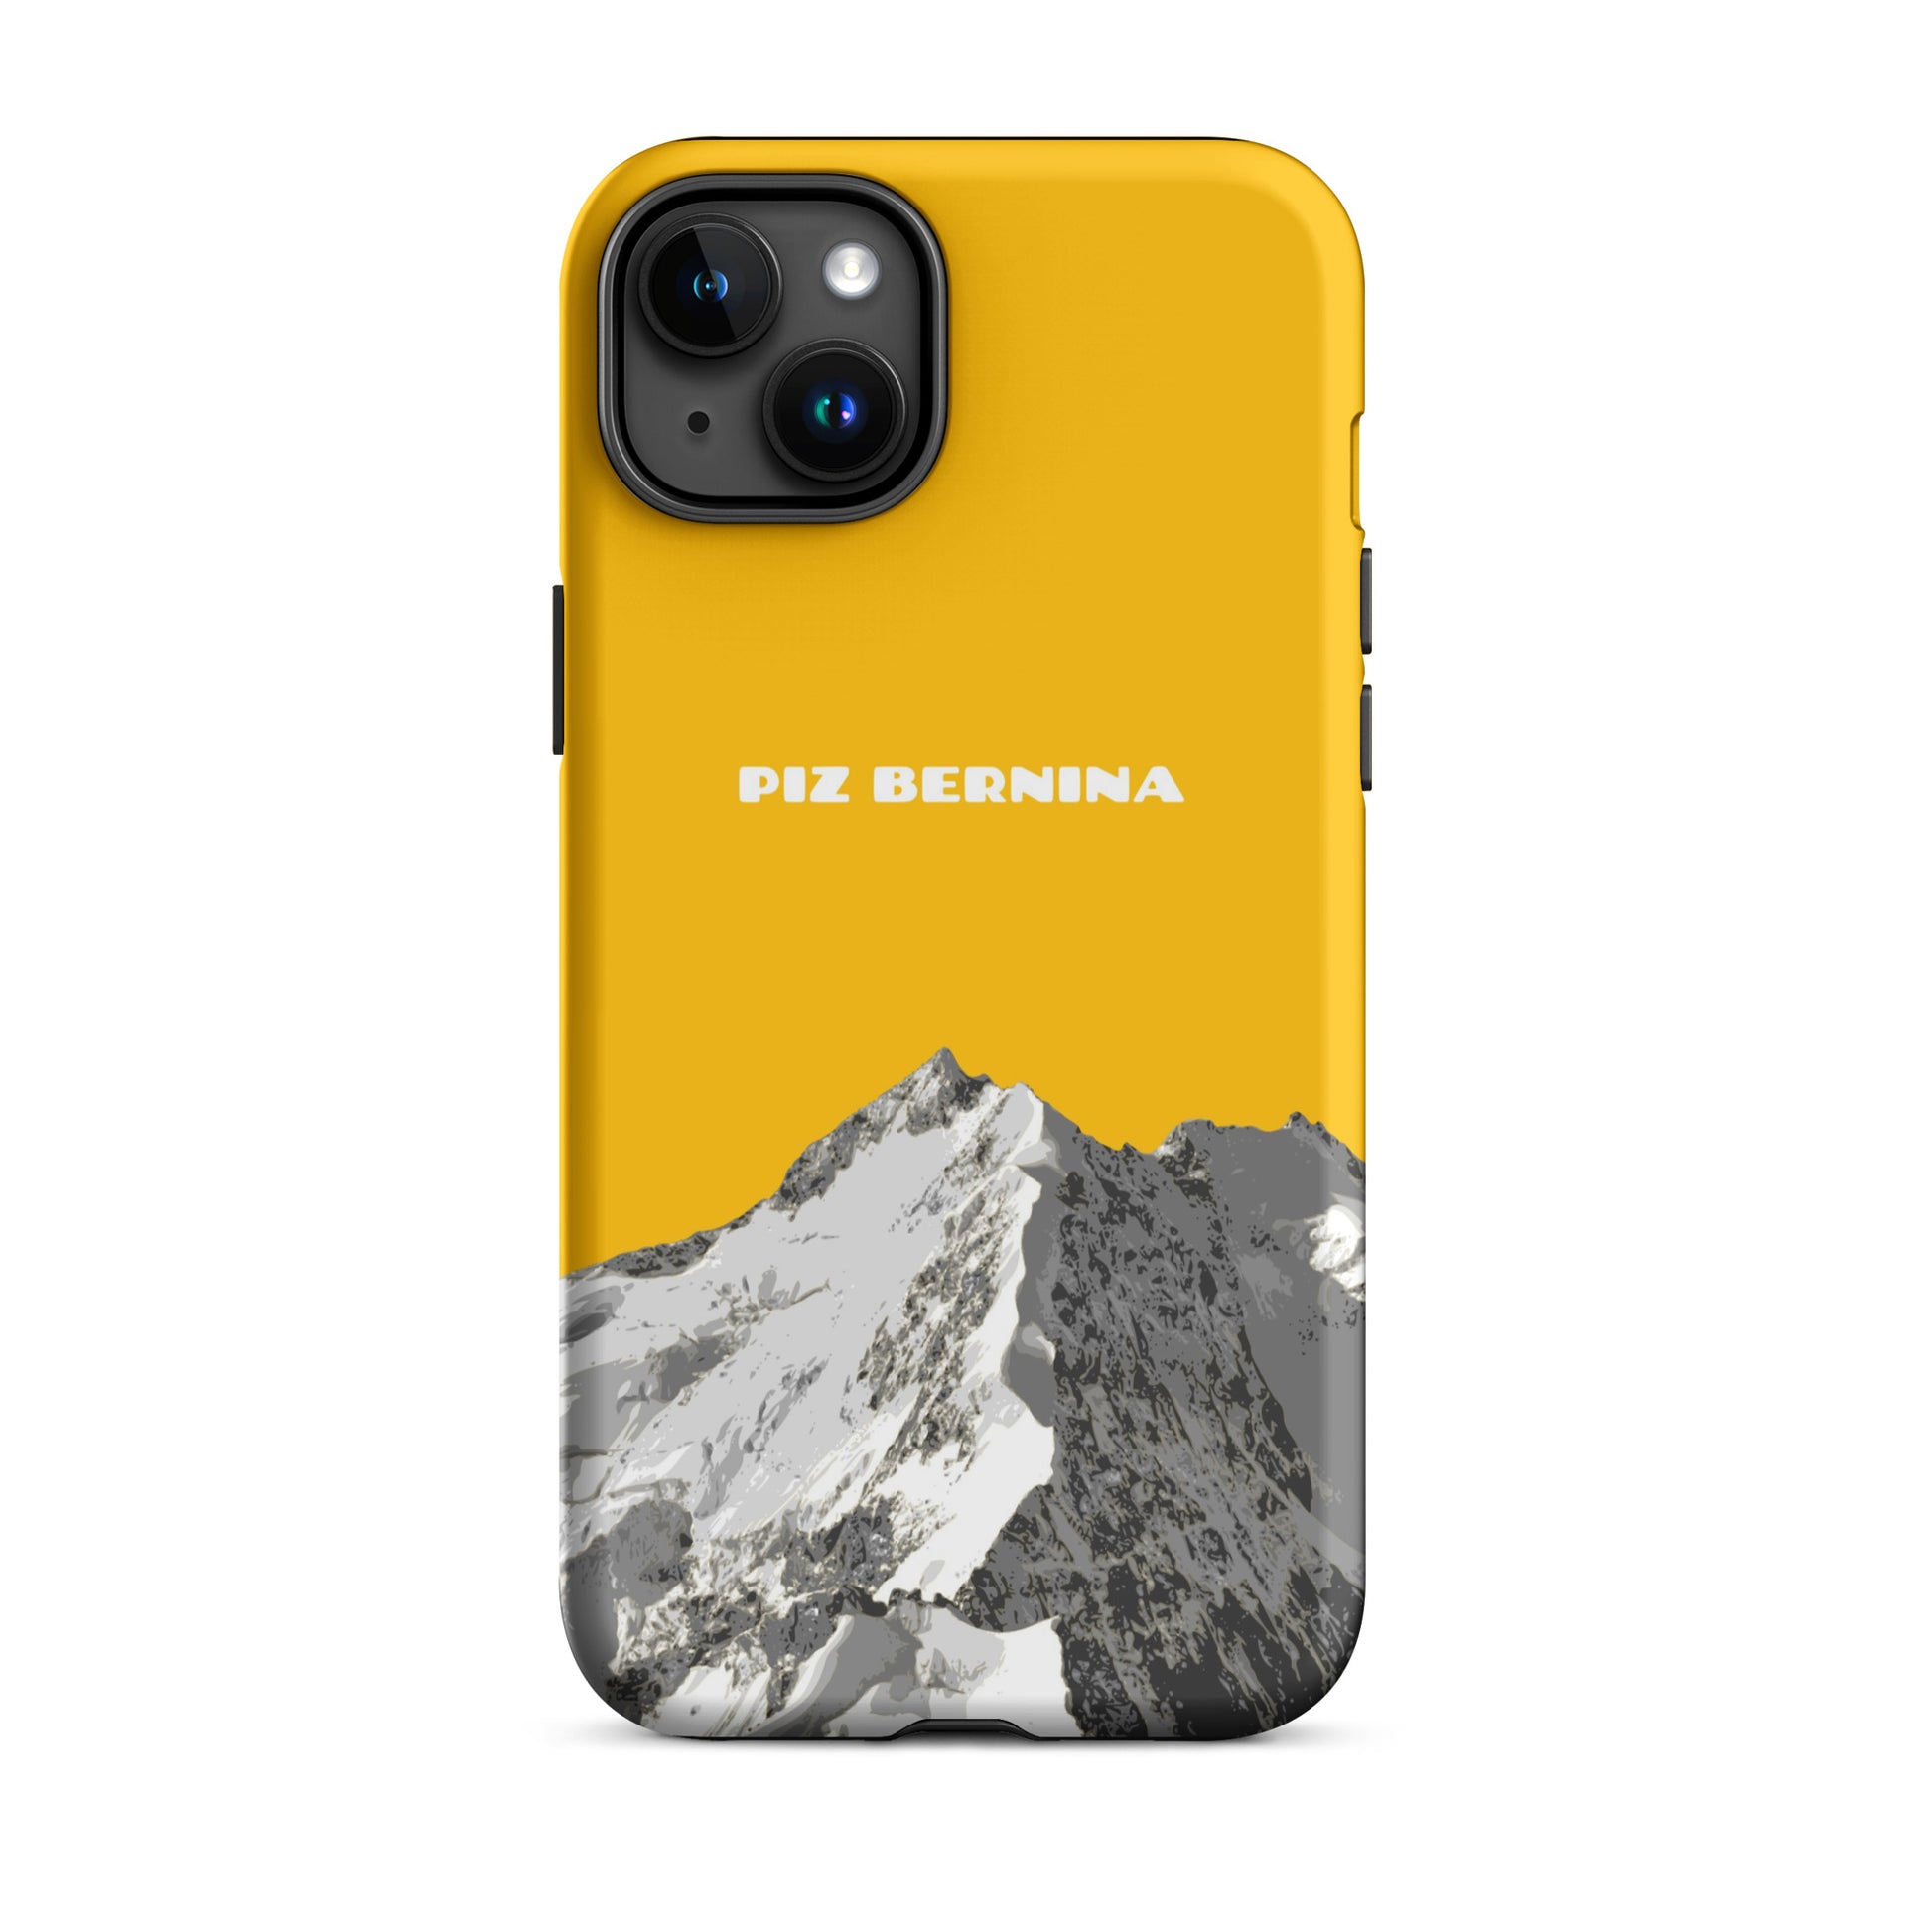 Hülle für das iPhone 15 Plus von Apple in der Farbe Goldgelb, dass den Piz Bernina in Graubünden zeigt.